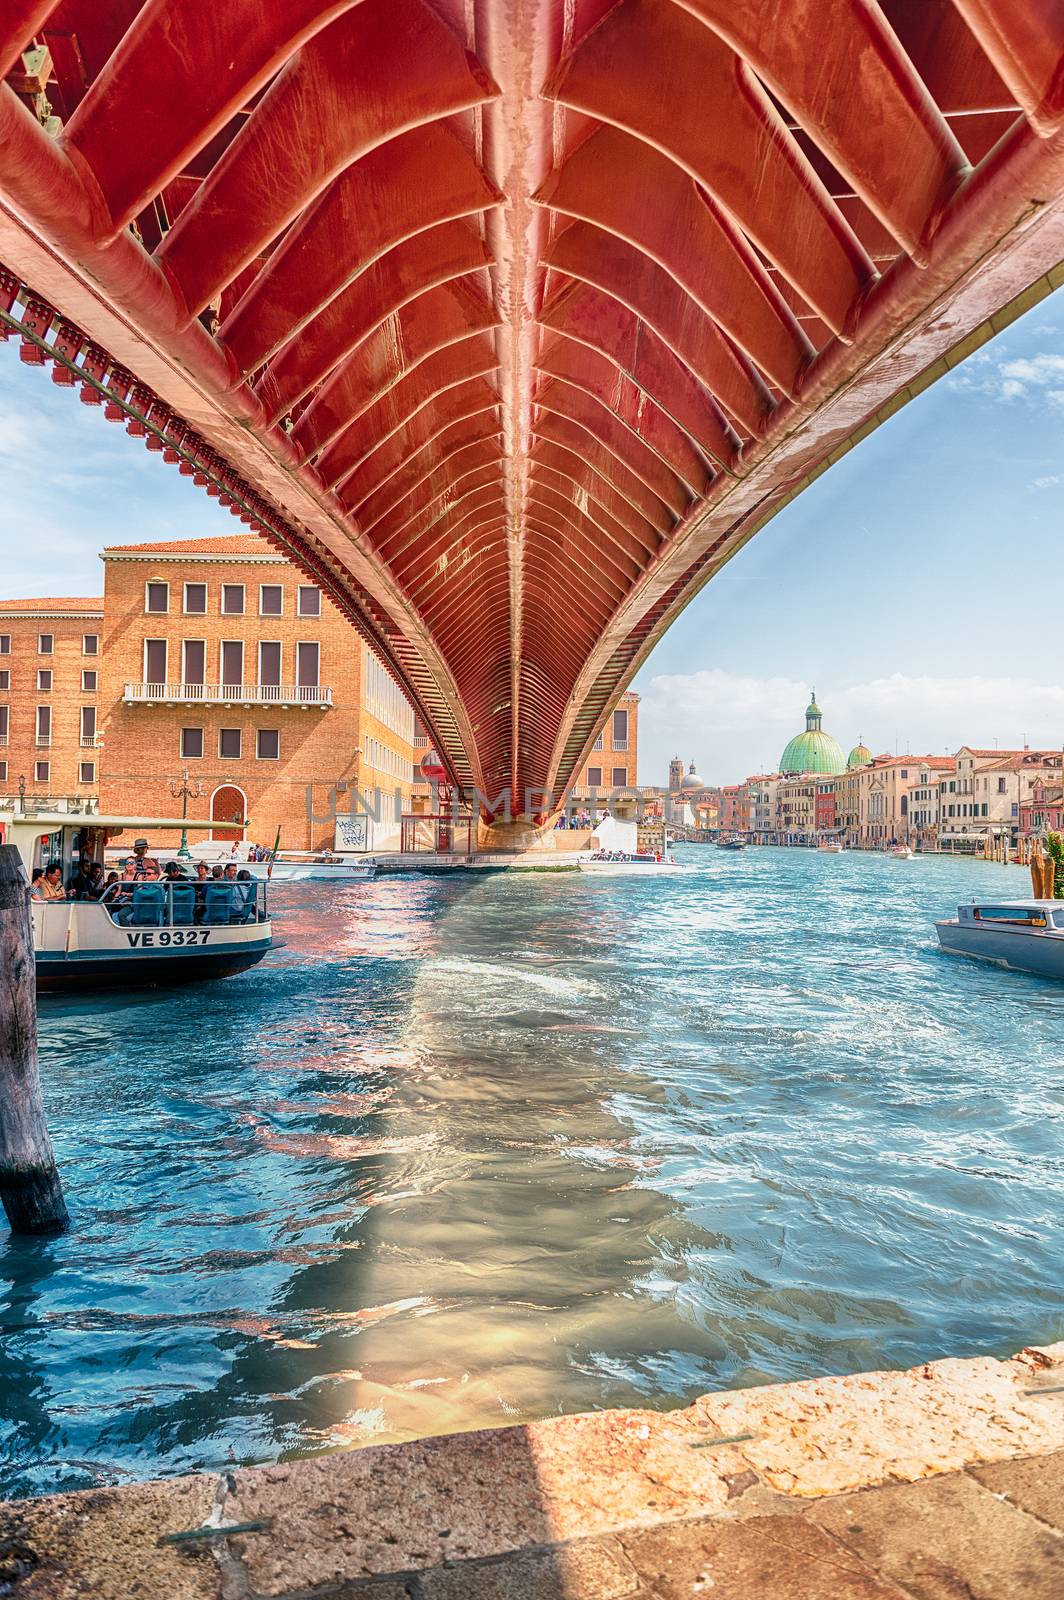 Underneath the Constitution Bridge in Venice, Italy by marcorubino